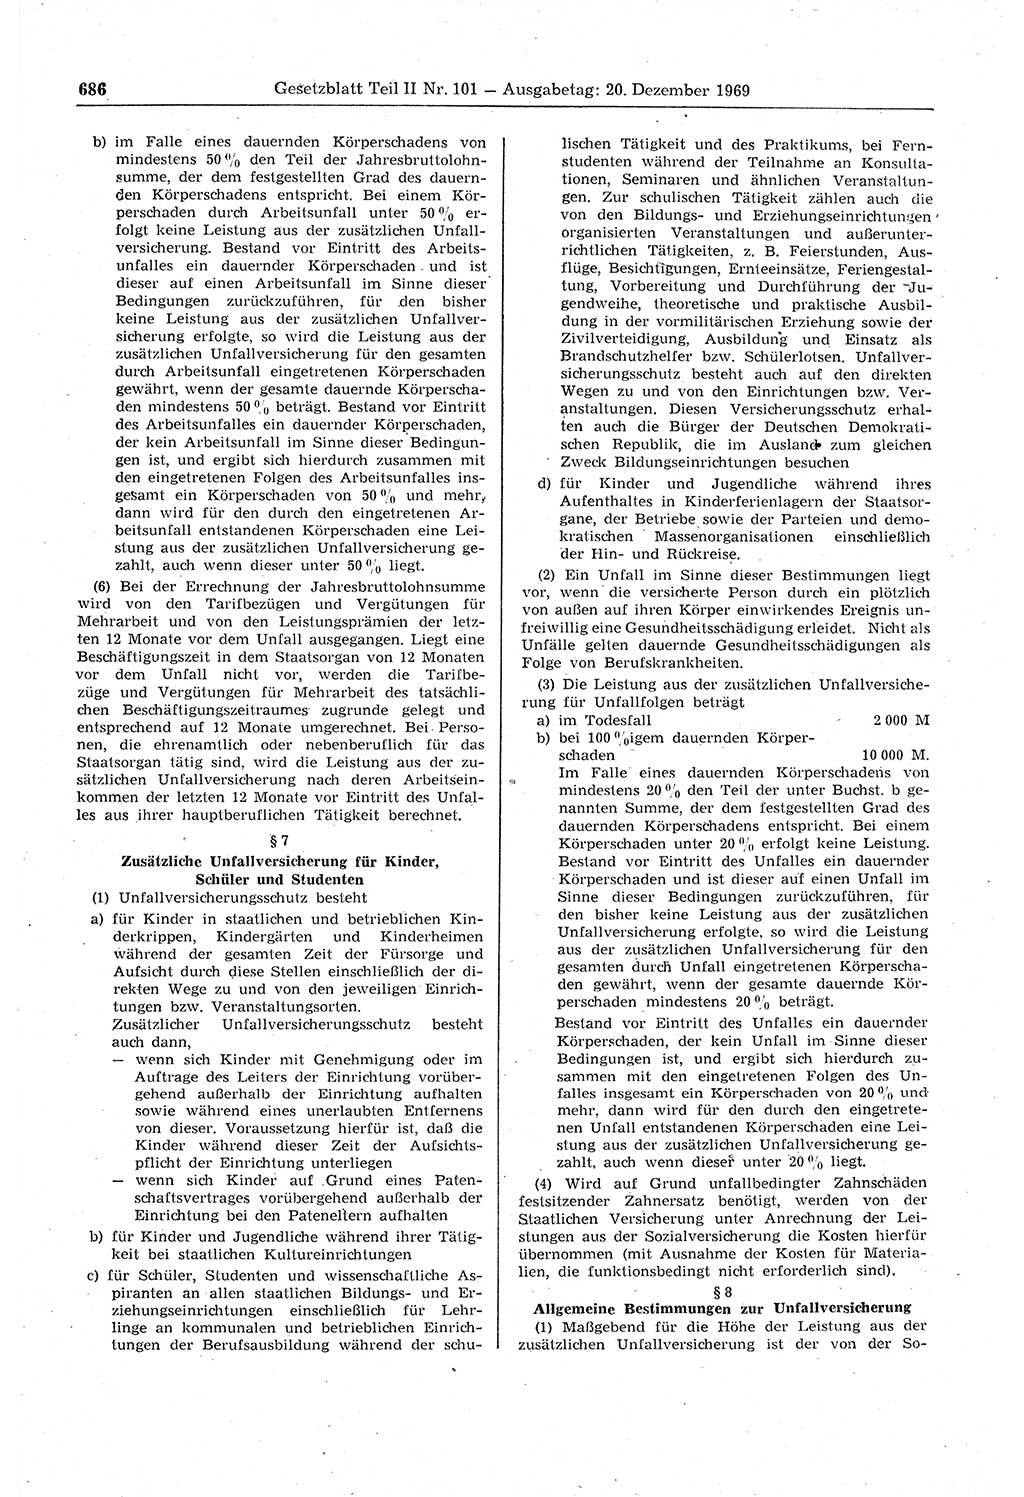 Gesetzblatt (GBl.) der Deutschen Demokratischen Republik (DDR) Teil ⅠⅠ 1969, Seite 686 (GBl. DDR ⅠⅠ 1969, S. 686)